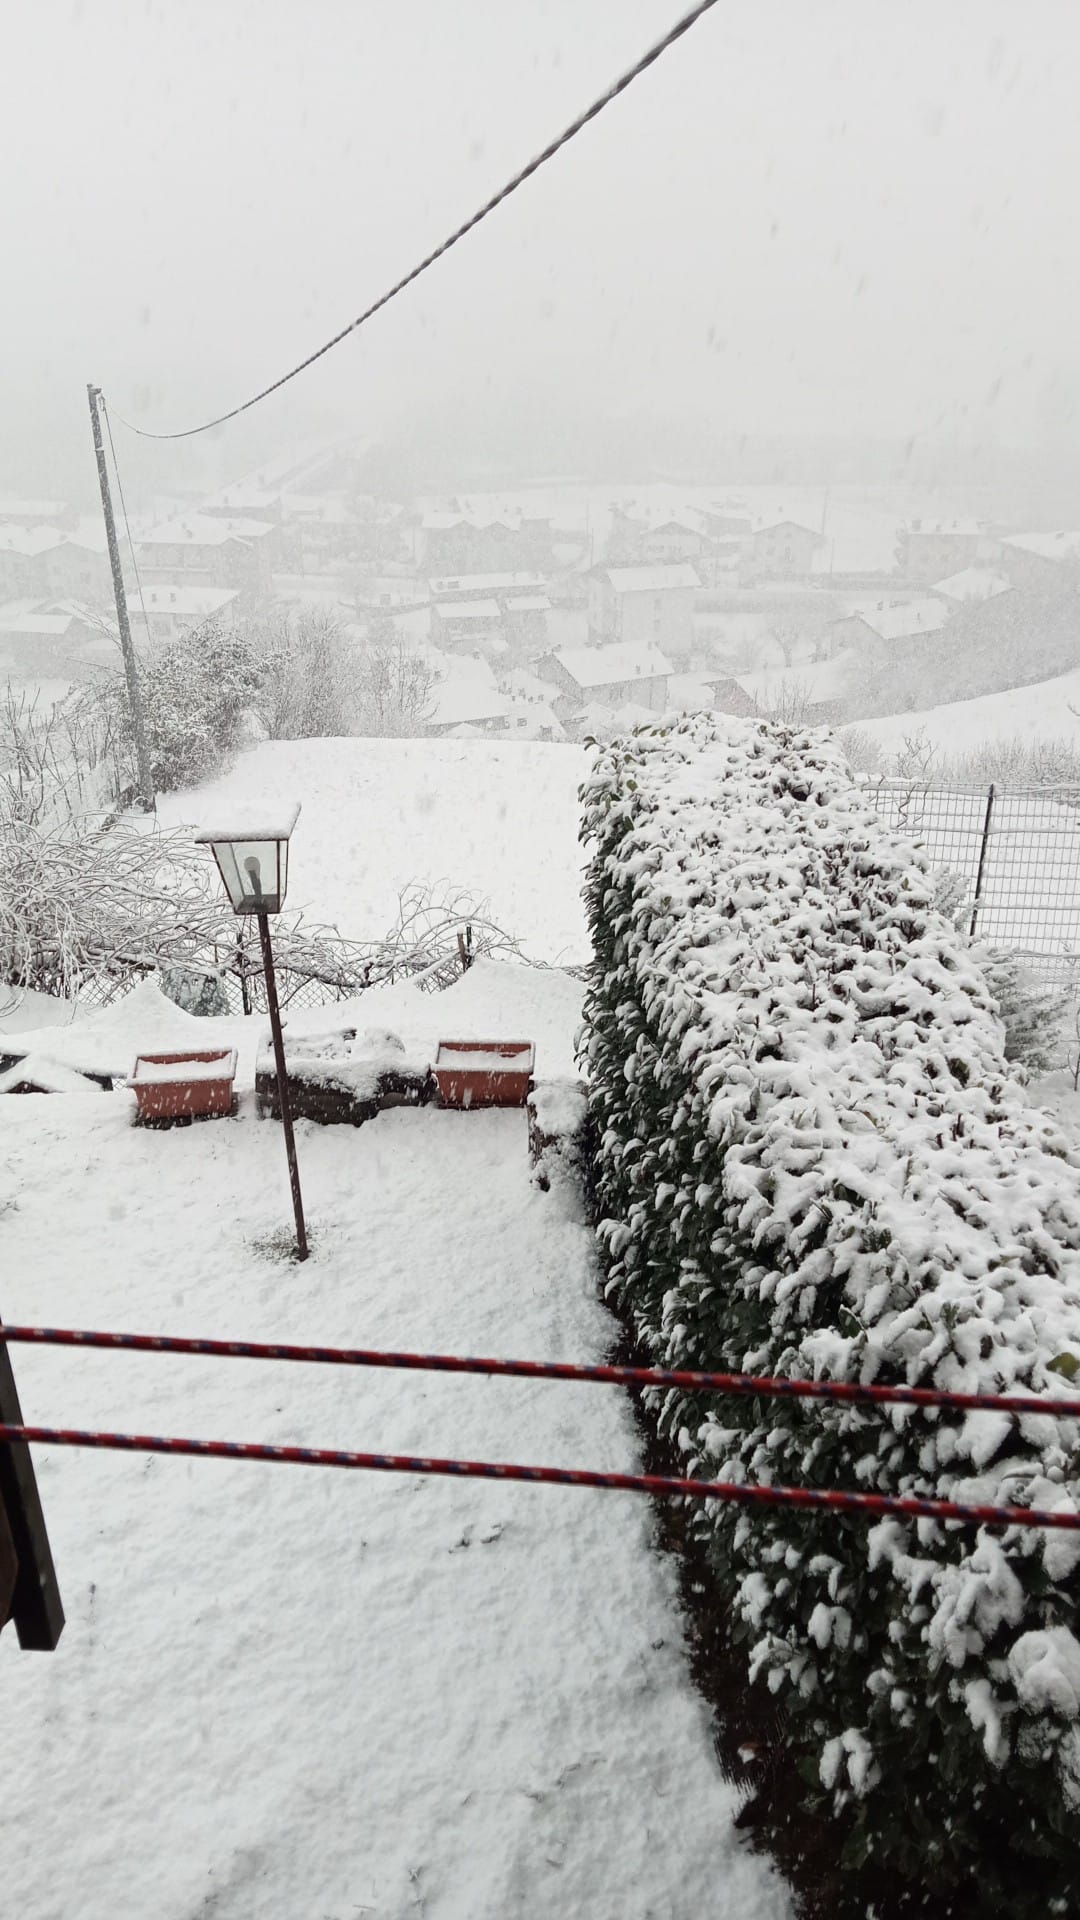 Bindo In arrivo neve a bassa quota sul Lecchese: le foto della Valle già imbiancata